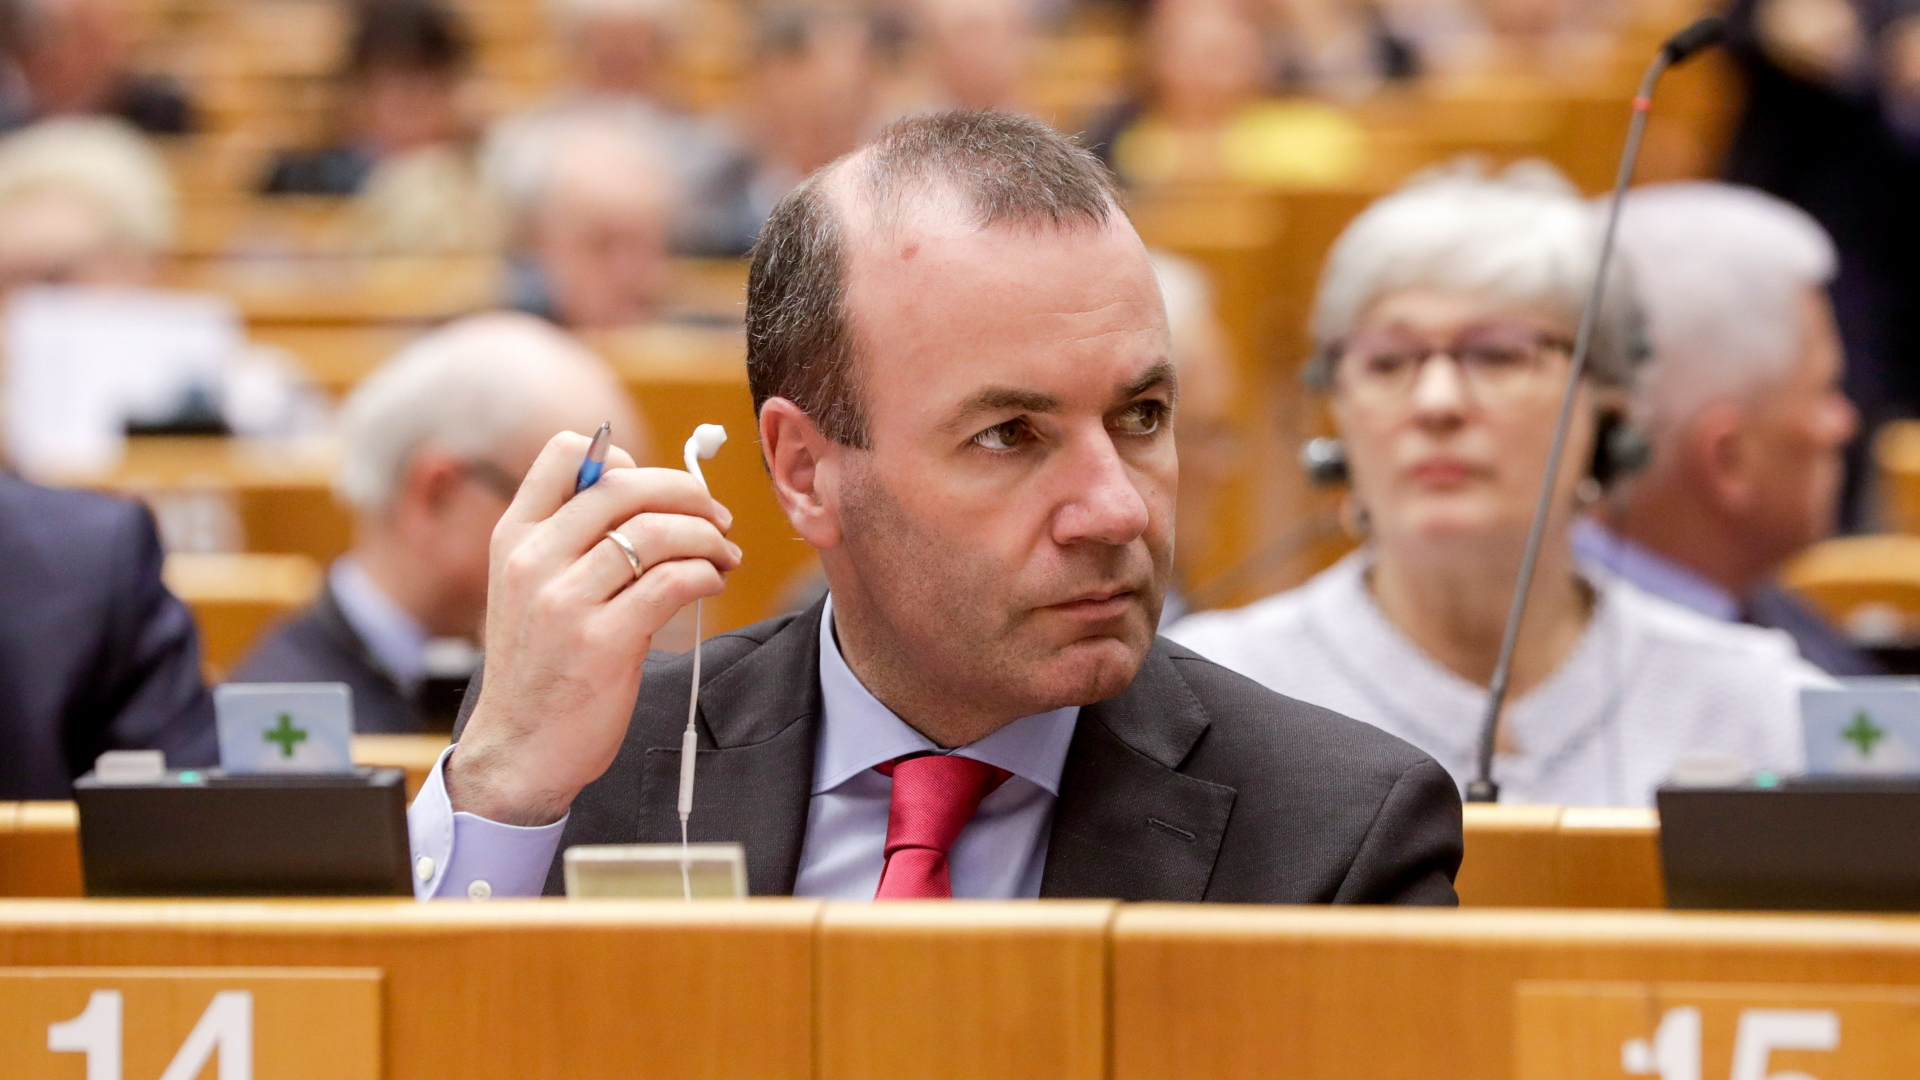 Der CSU-Europaabgeordnete Weber hält während einer Debatte einen Kopfhörer in der Hand | STEPHANIE LECOCQ/EPA-EFE/REX